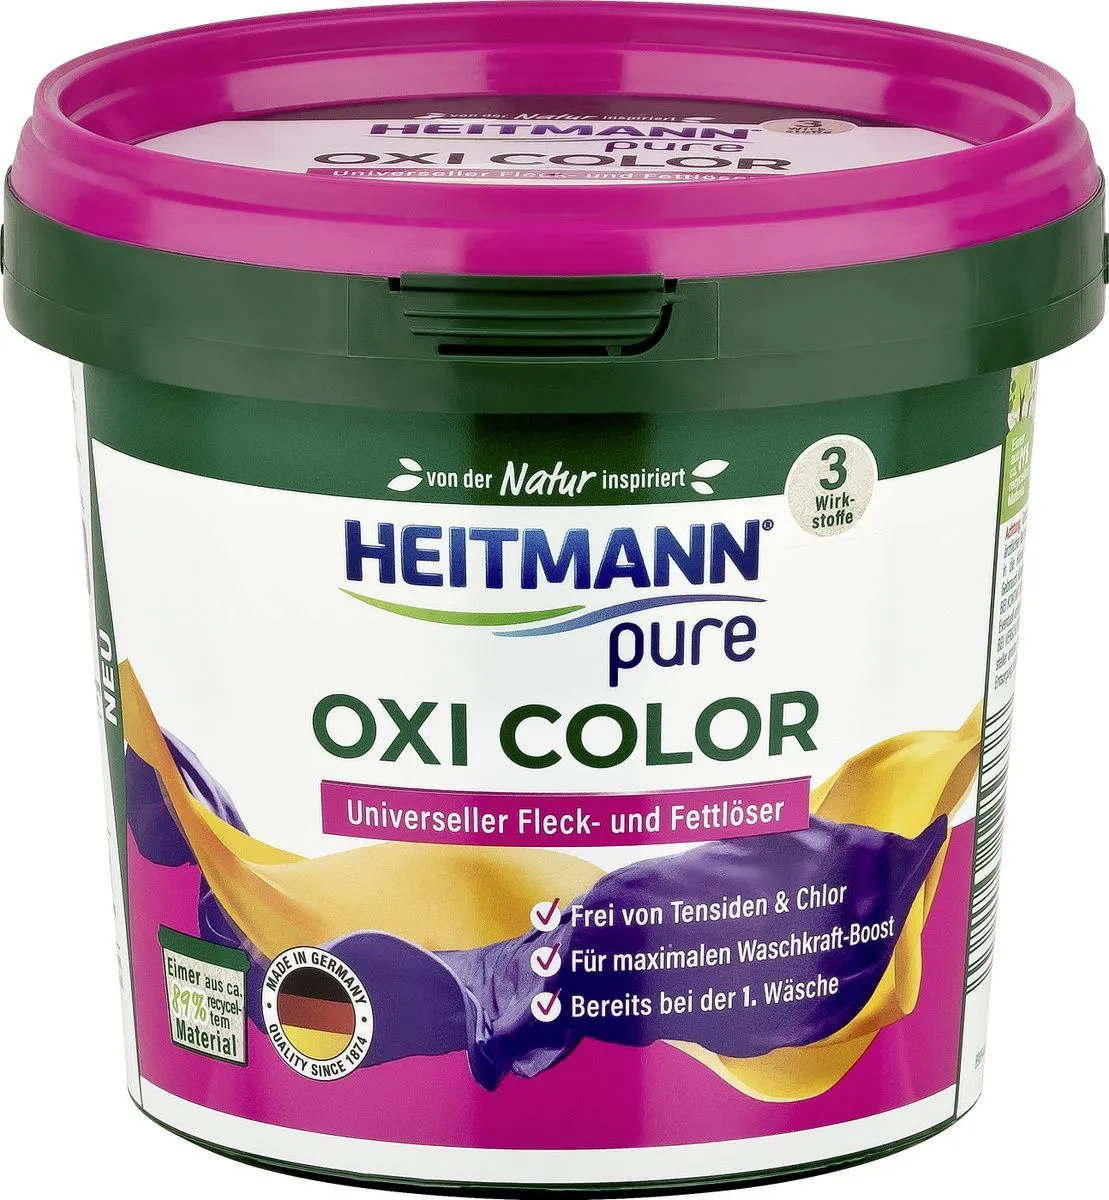 Heitmann Pure Oxi Color Пятновыводитель для вещей универсальный 500 гр